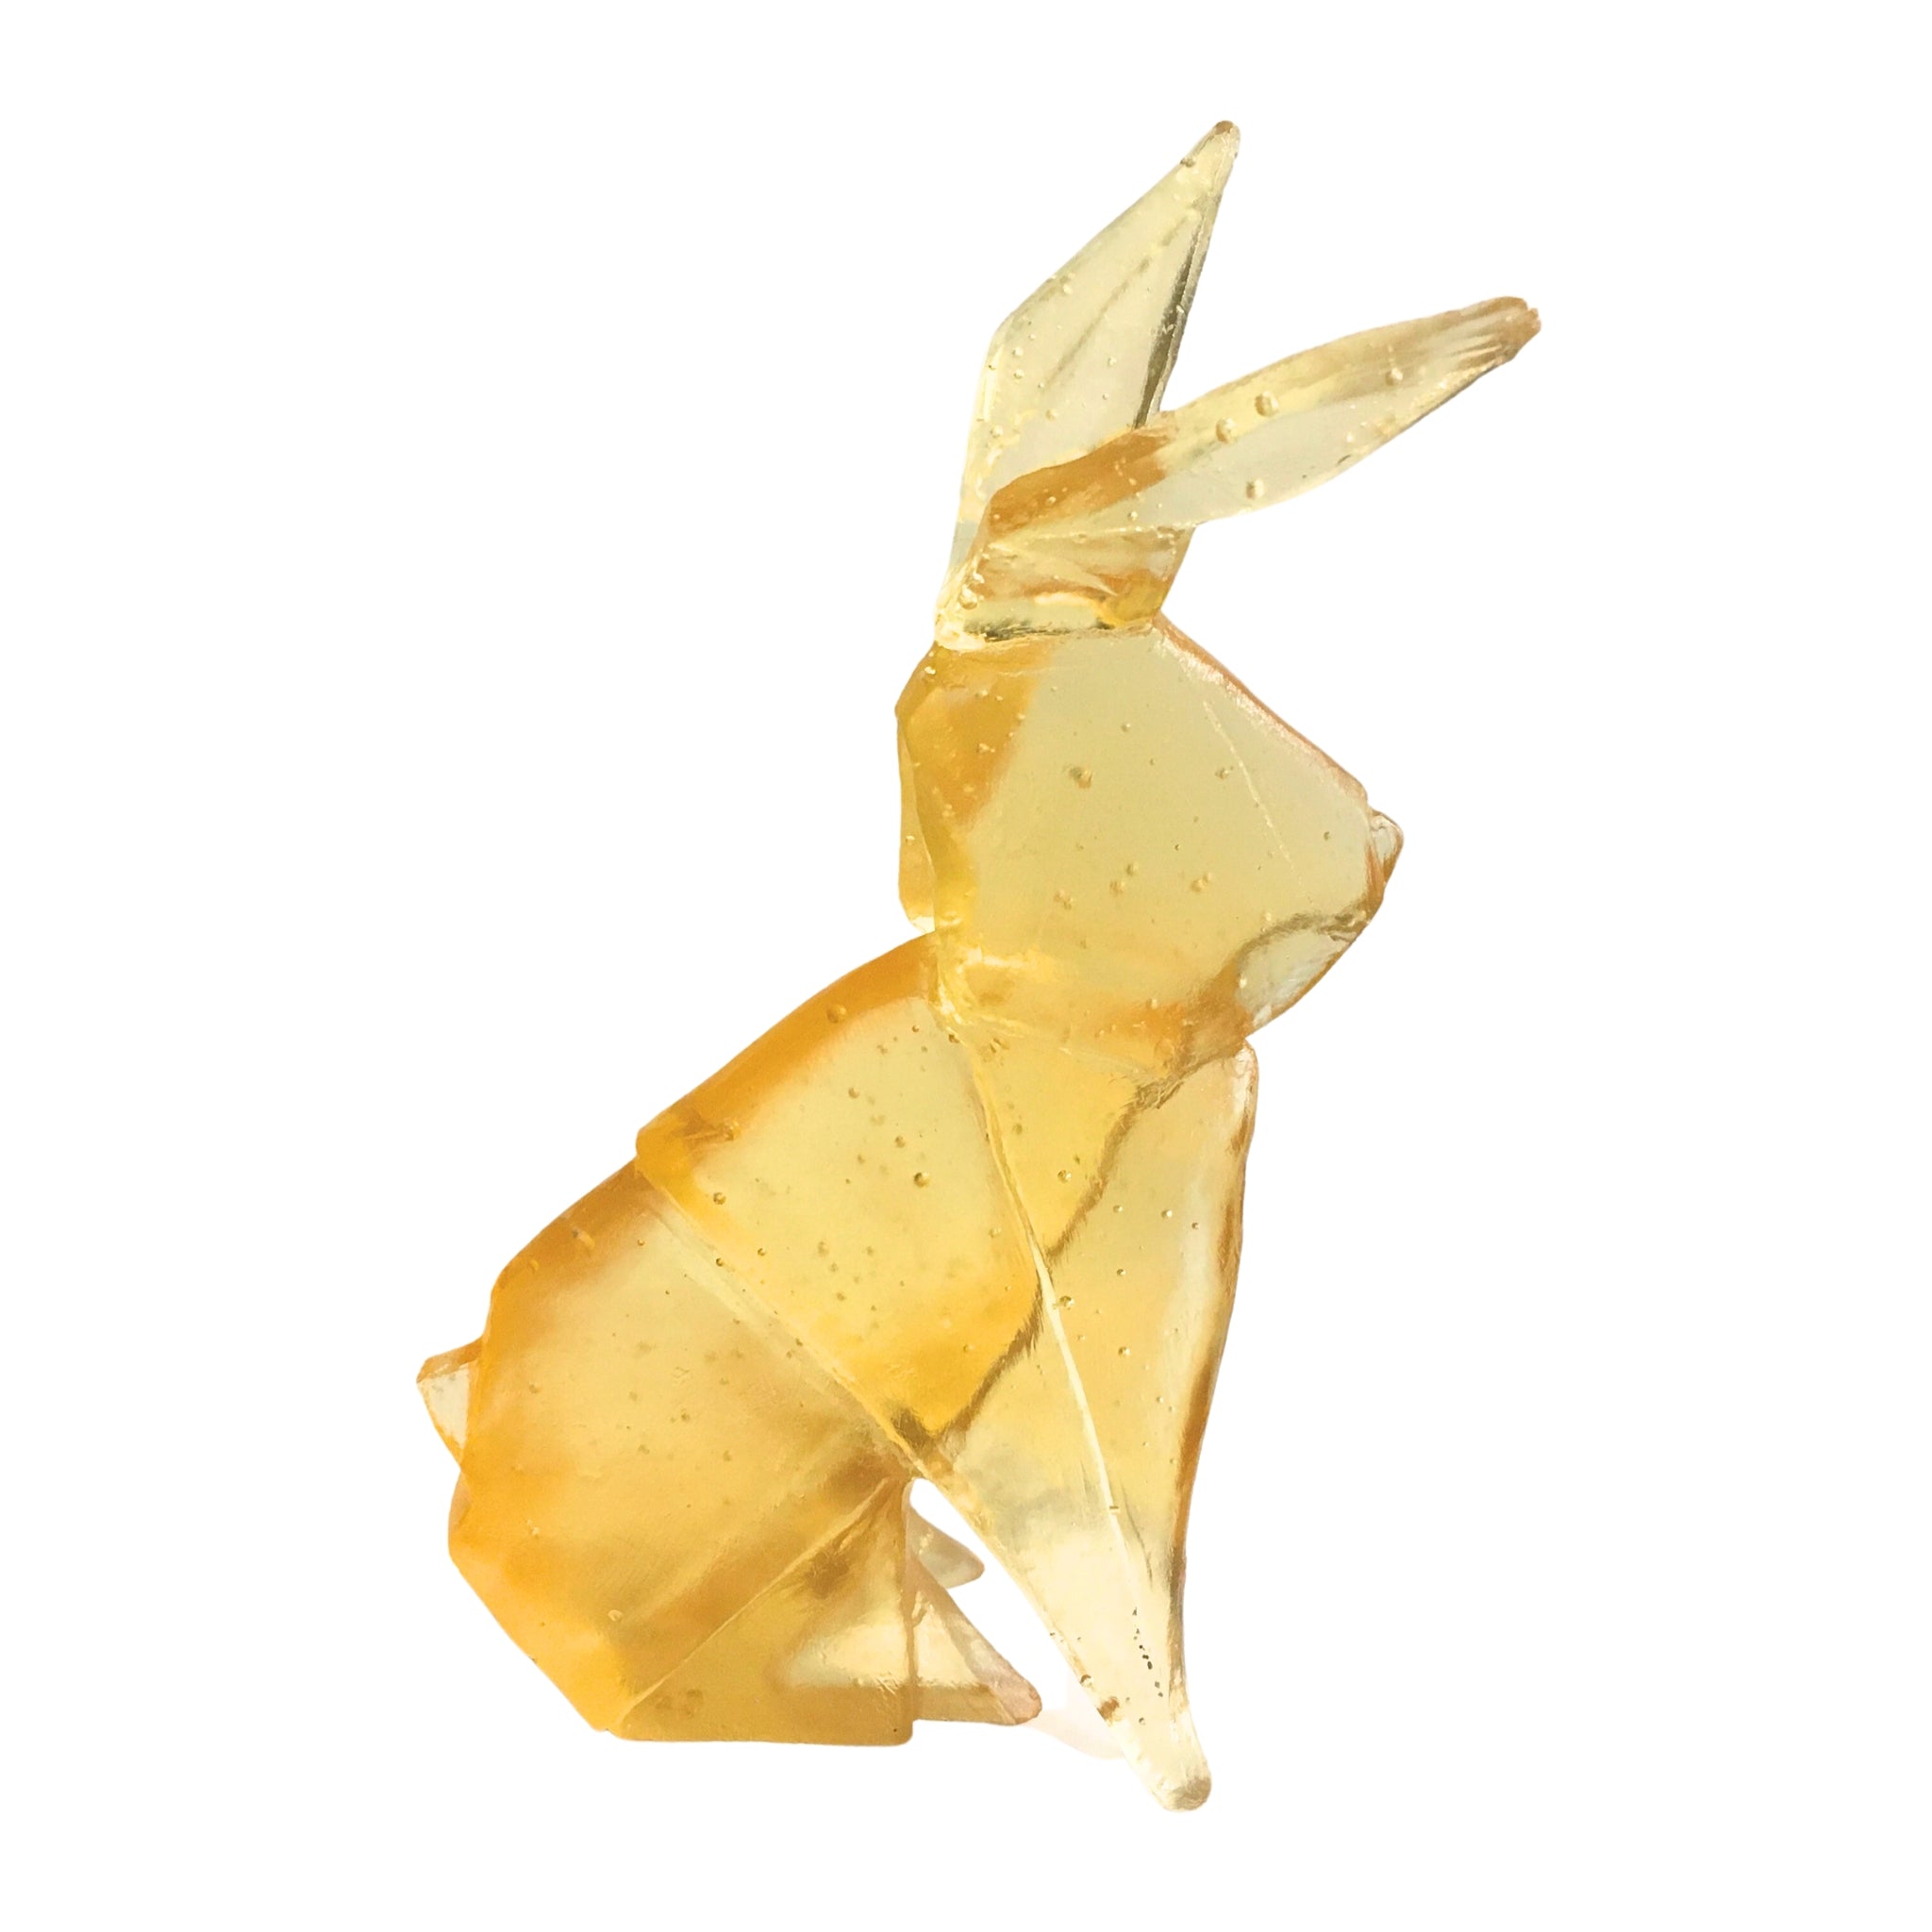 Thomas Barter - Origami Rabbit